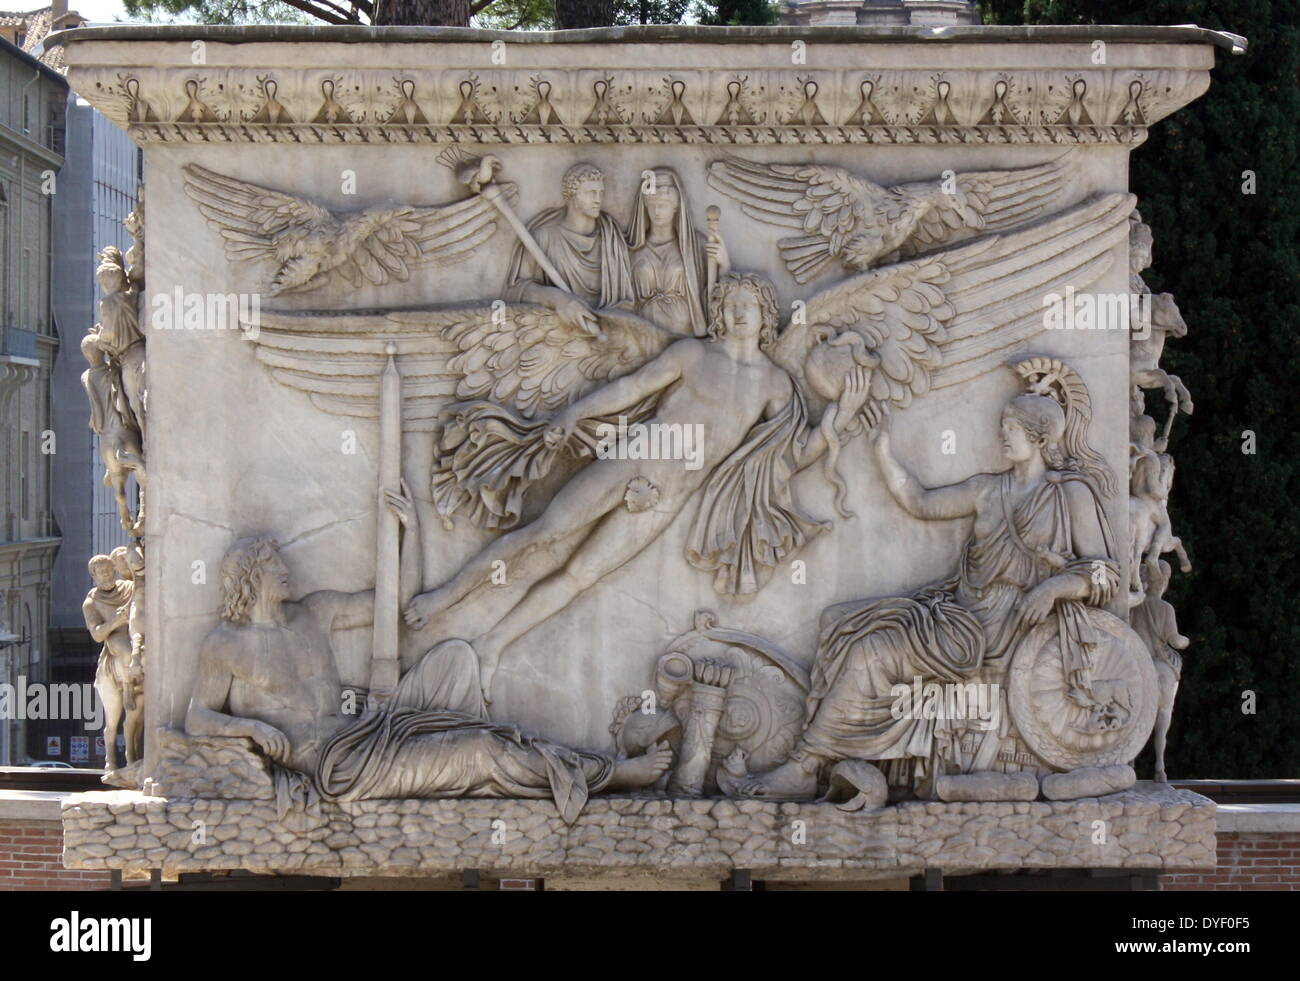 Detail aus der Vatikanischen Gärten, die großen weitläufigen städtischen Gärten, die mehr als die Hälfte der Vatikan Gebiet (rund 23 Hektar). Die Gärten sind mit Skulpturen, Reliefs und Springbrunnen dekoriert. Das Bild zeigt die Hilfsaktionen. Stockfoto